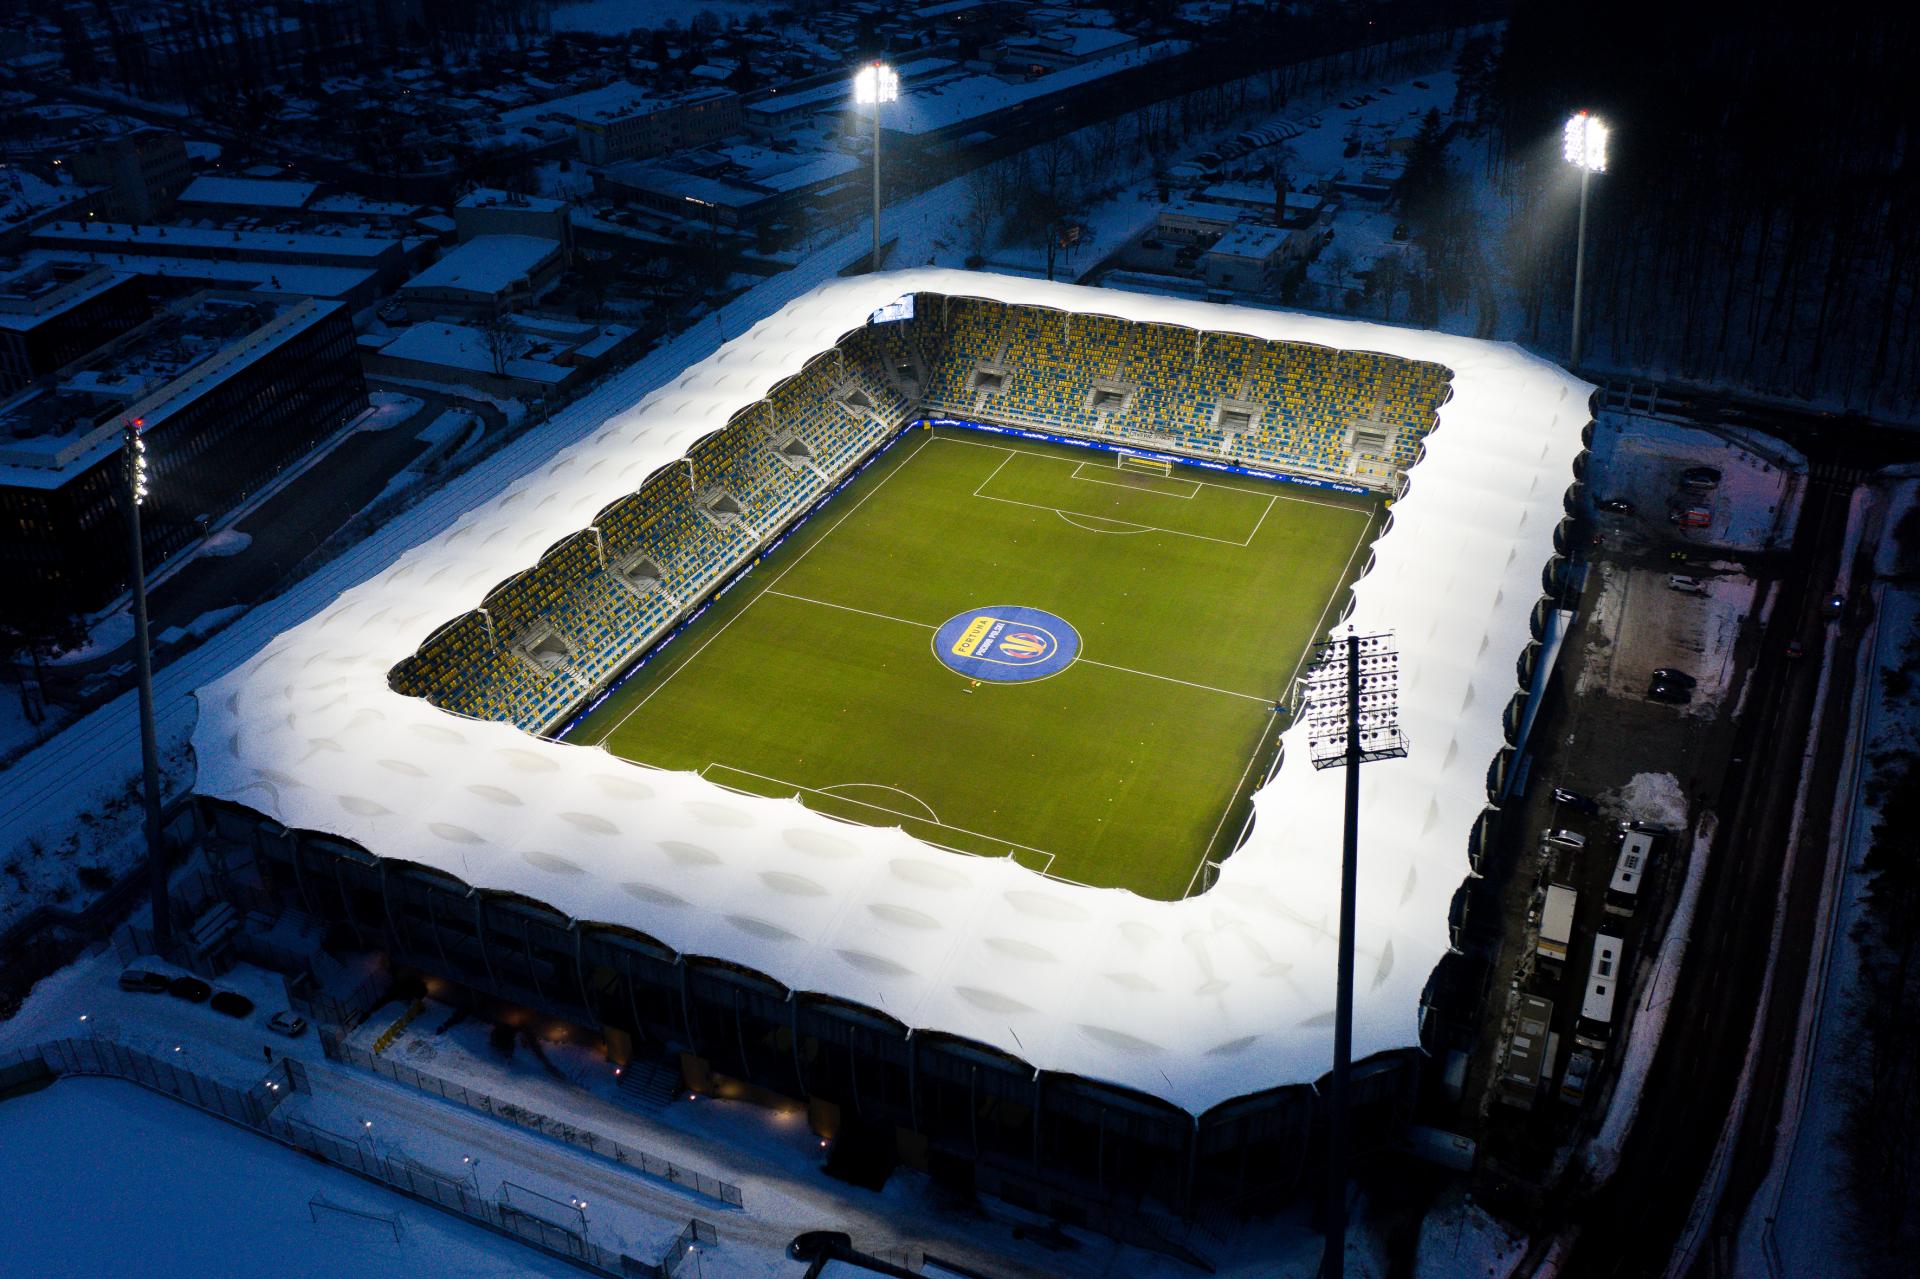 Stadion Arka Gdynia (2021)